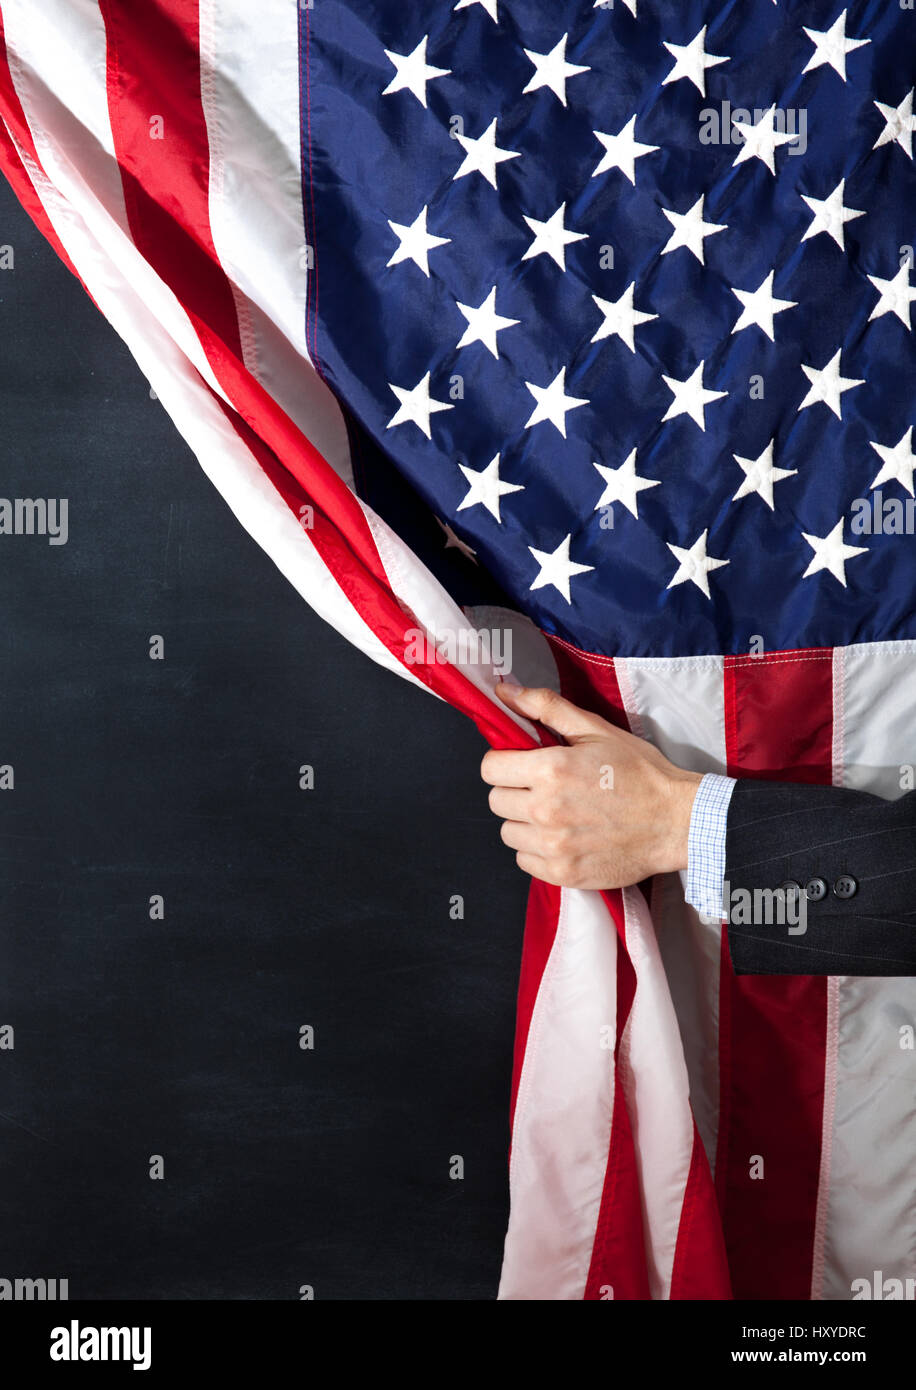 Empresario, América, Estados Unidos, bandera, oculto, negocios, carbón, amenaza u oportunidad. Foto de stock